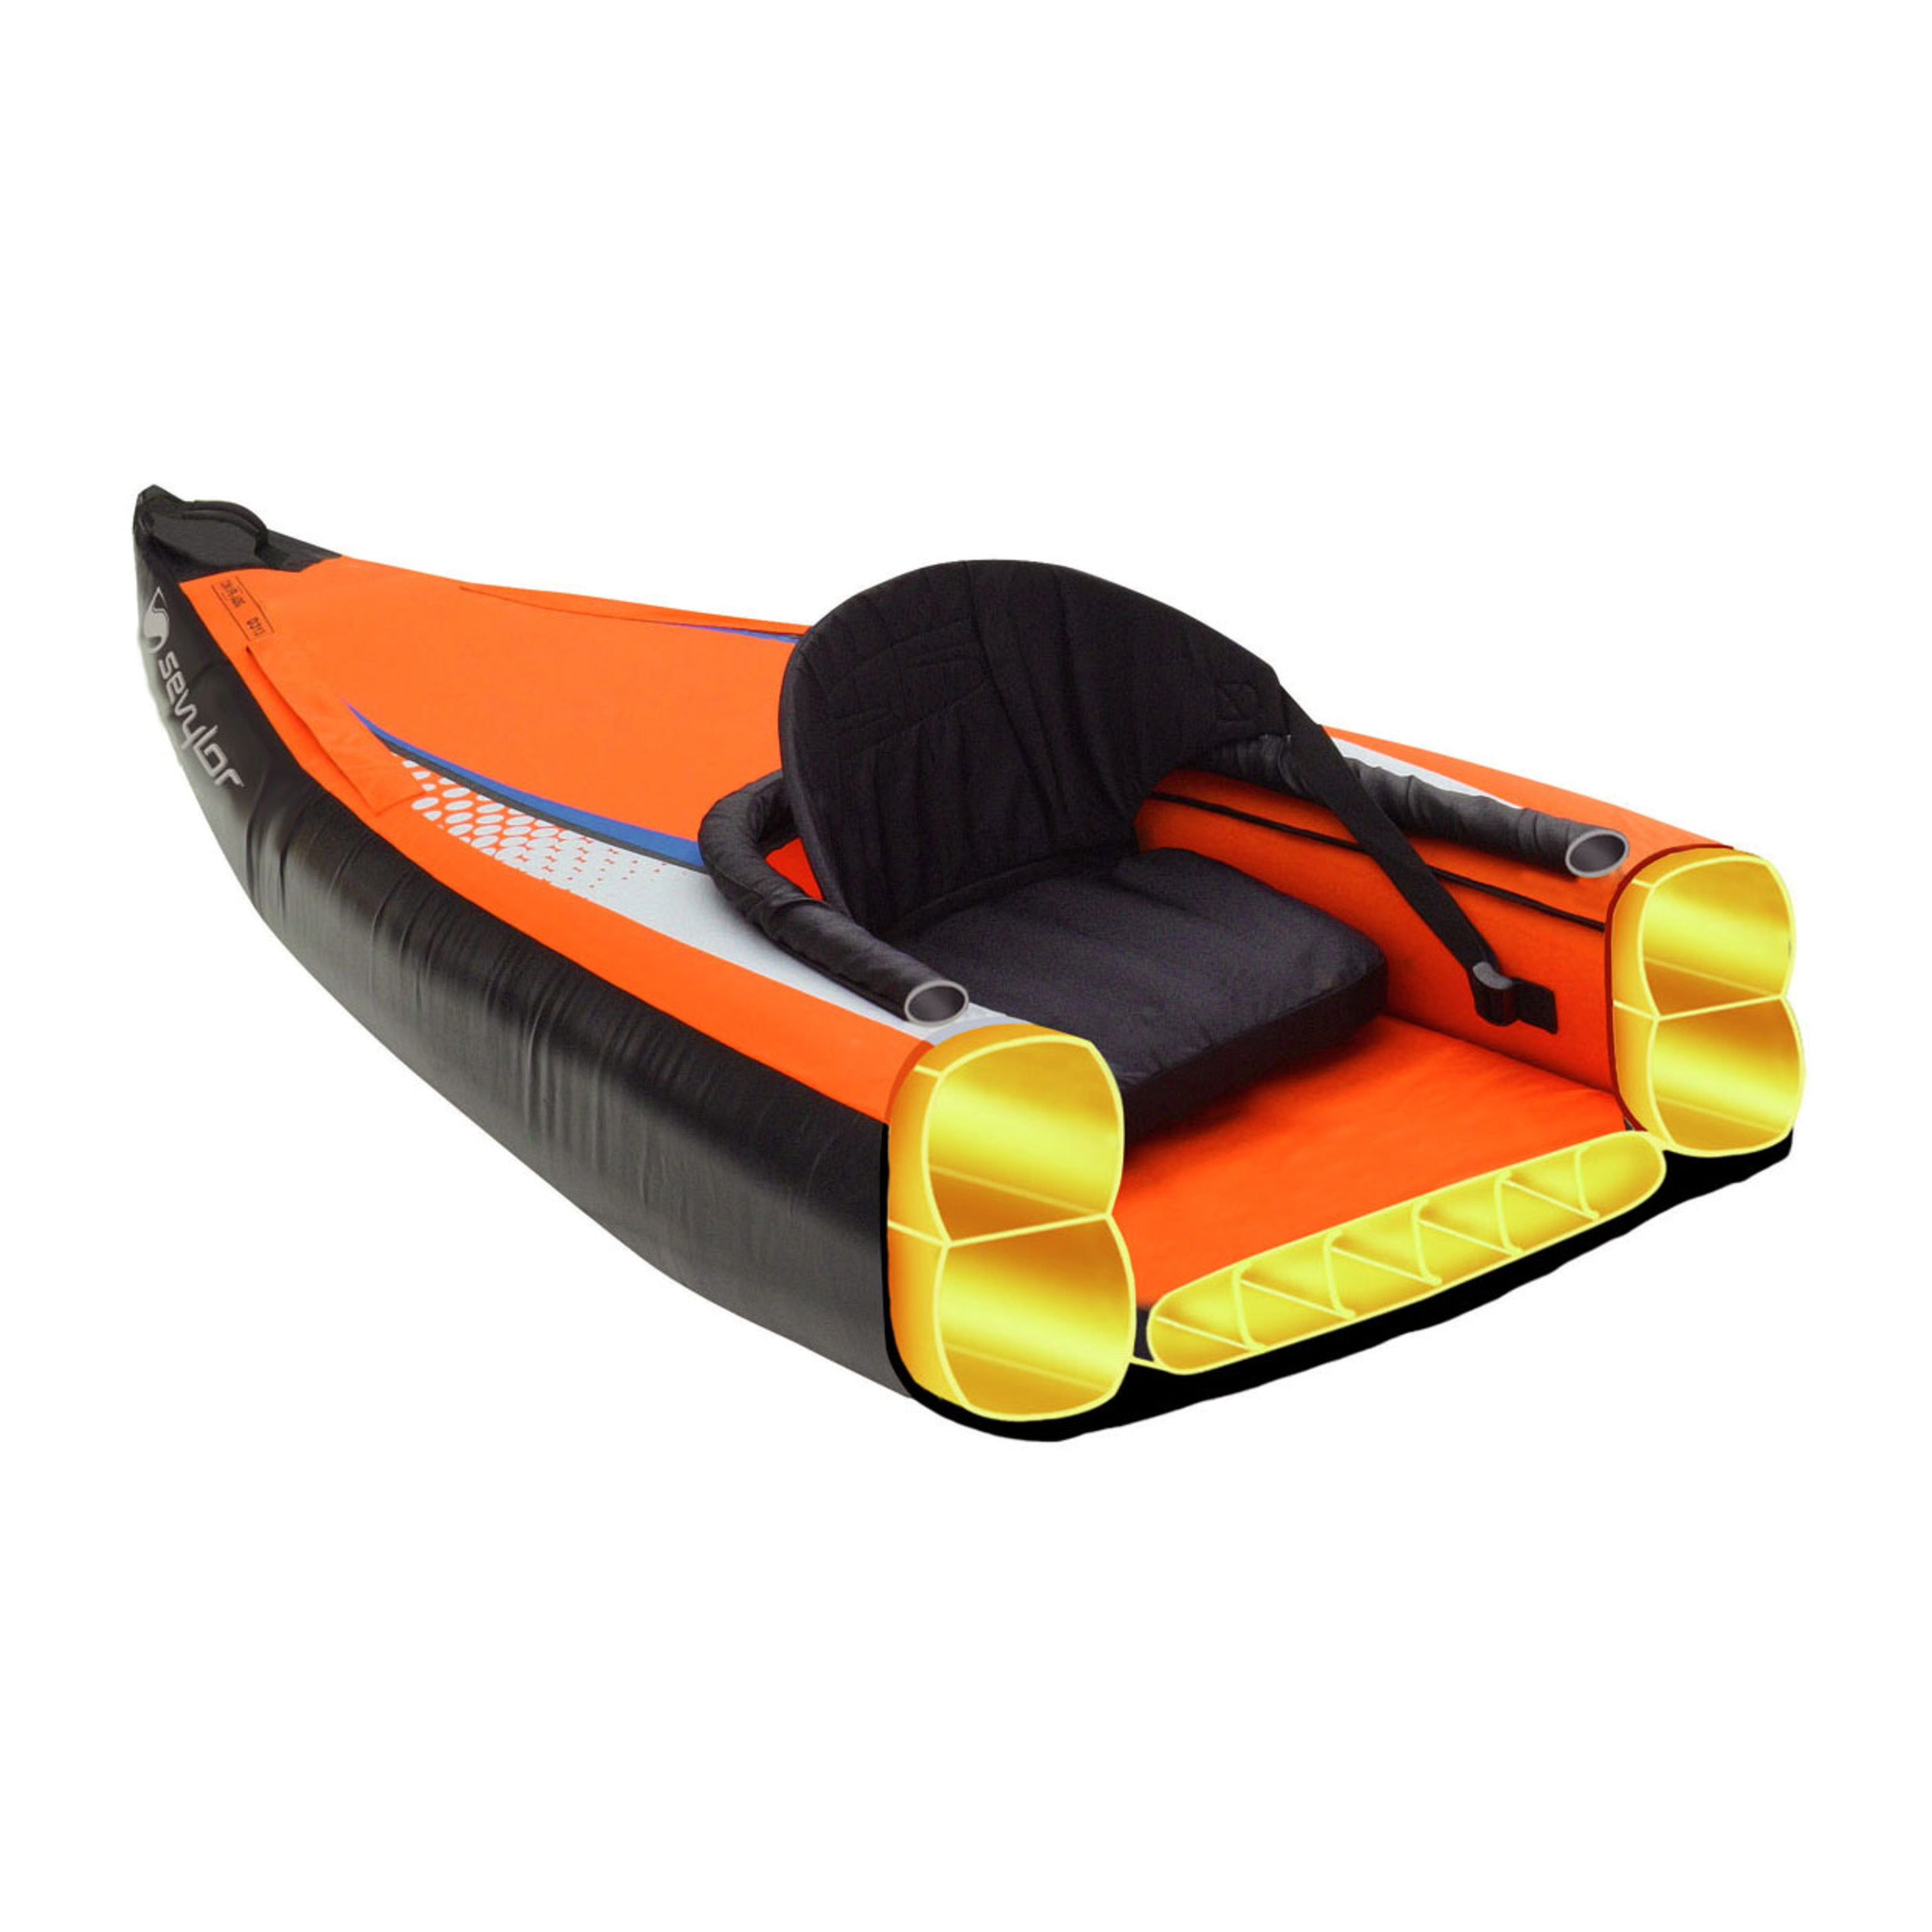 Kayak Pointer K2 - Naranja/Negro - Kayak 2 plazas  MKP